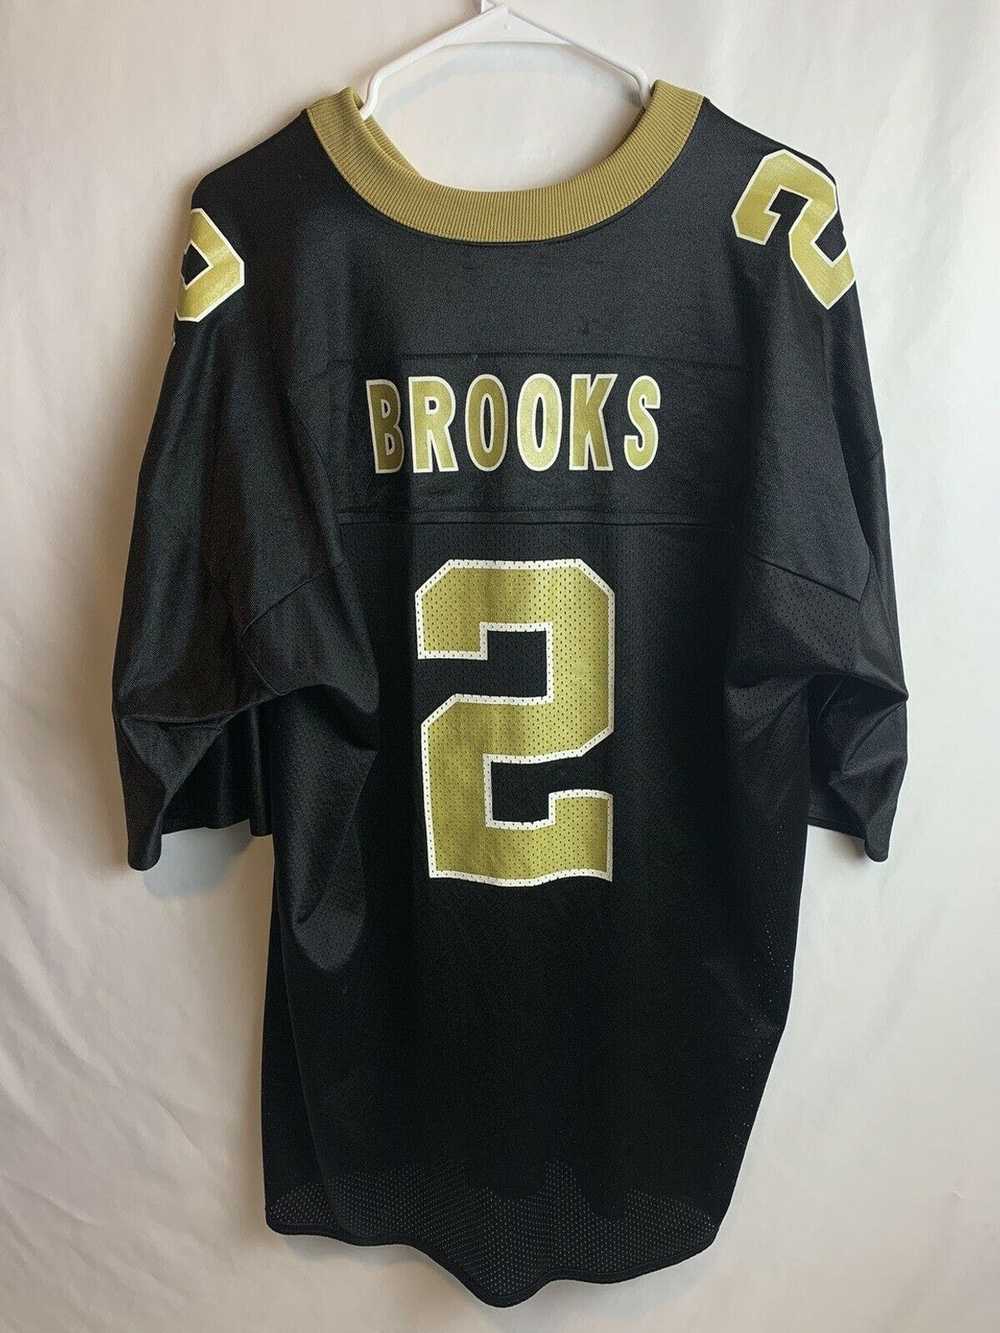 Reebok Reebok Aaron Brooks New Orleans Mens NFL T… - image 2